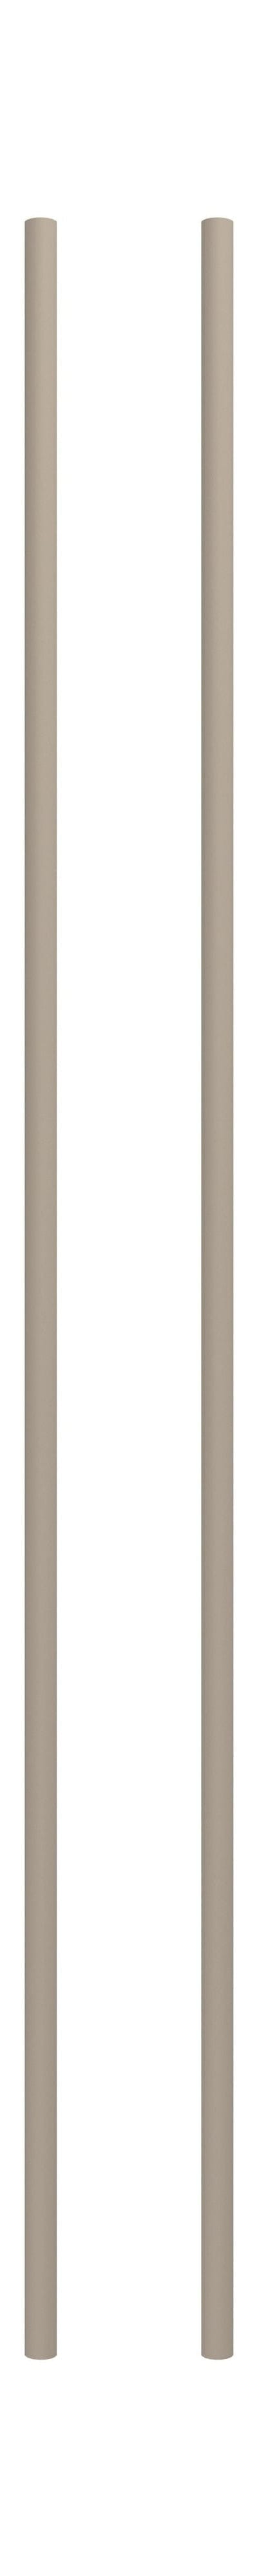 Sistema di scaffalature Moebe/gamba per scaffalature da parete 115 cm grigio caldo, set di 2